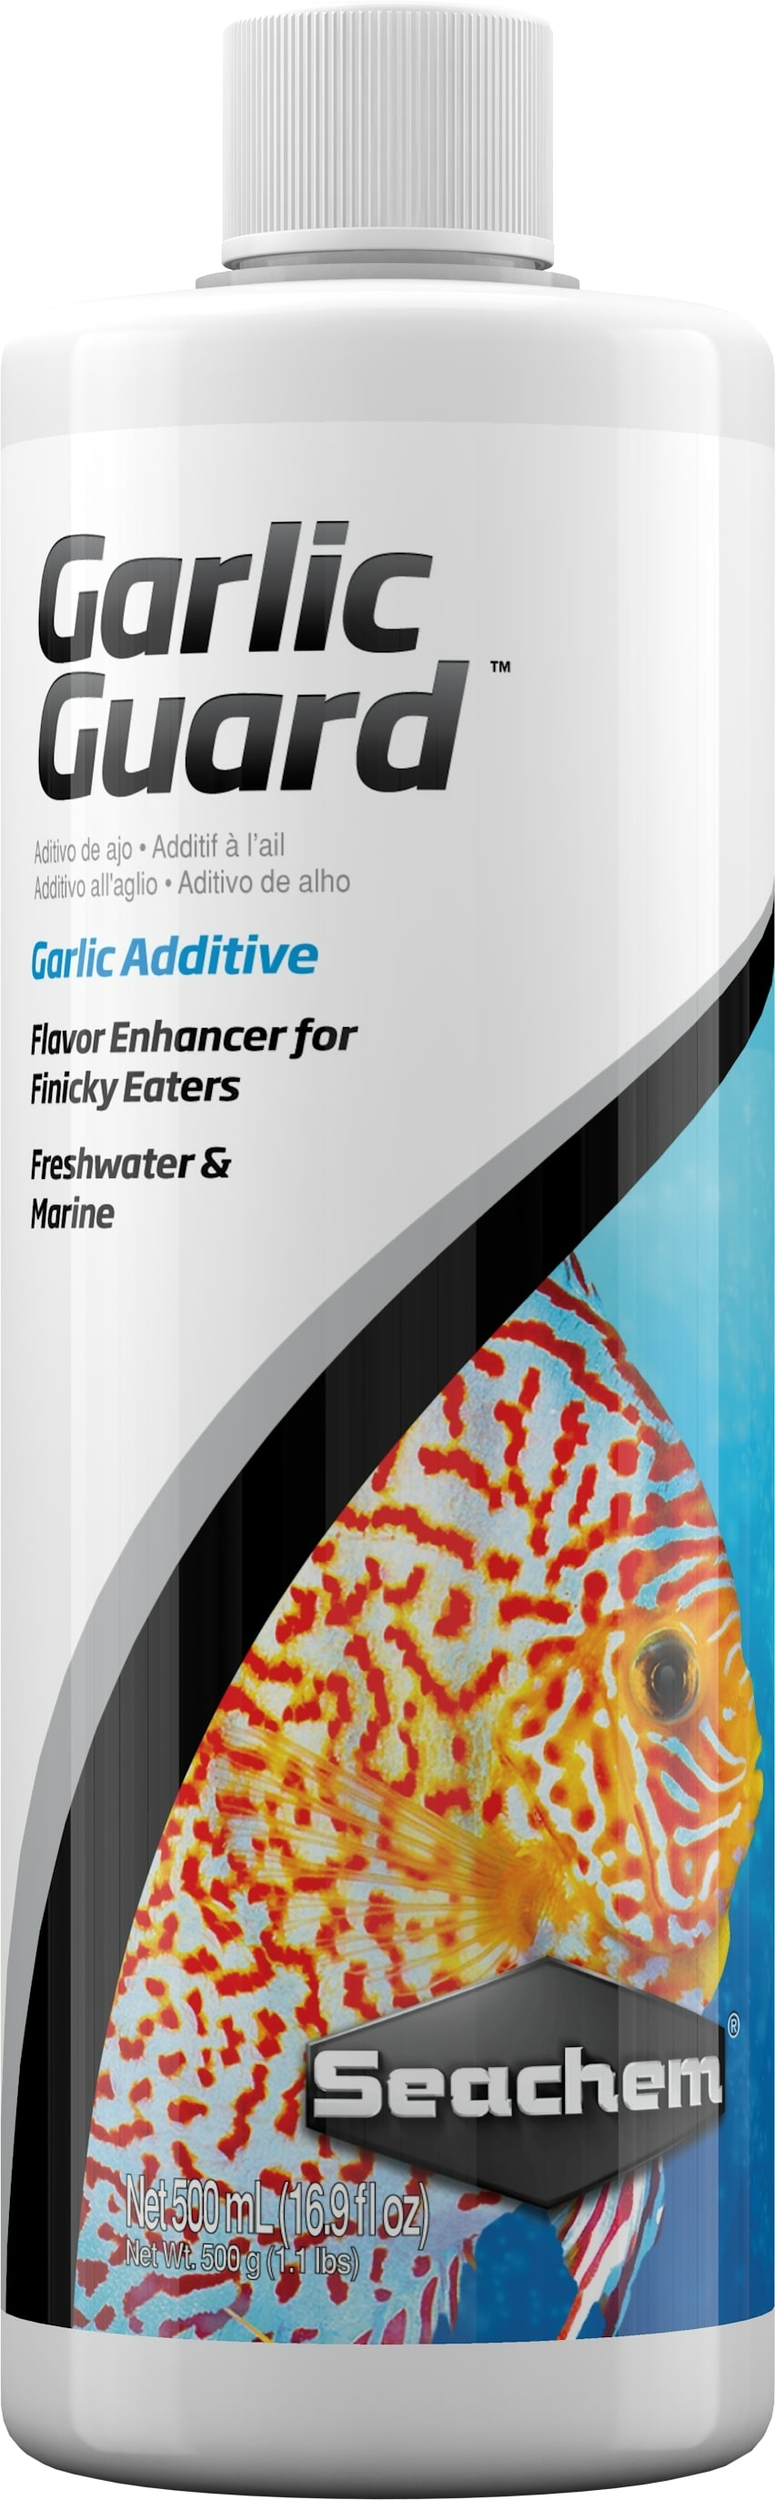 seachem-garlicguard-500-ml-accelerateur-d-appetit-a-base-d-ail-pour-les-poissons-difficiles-a-nourrir